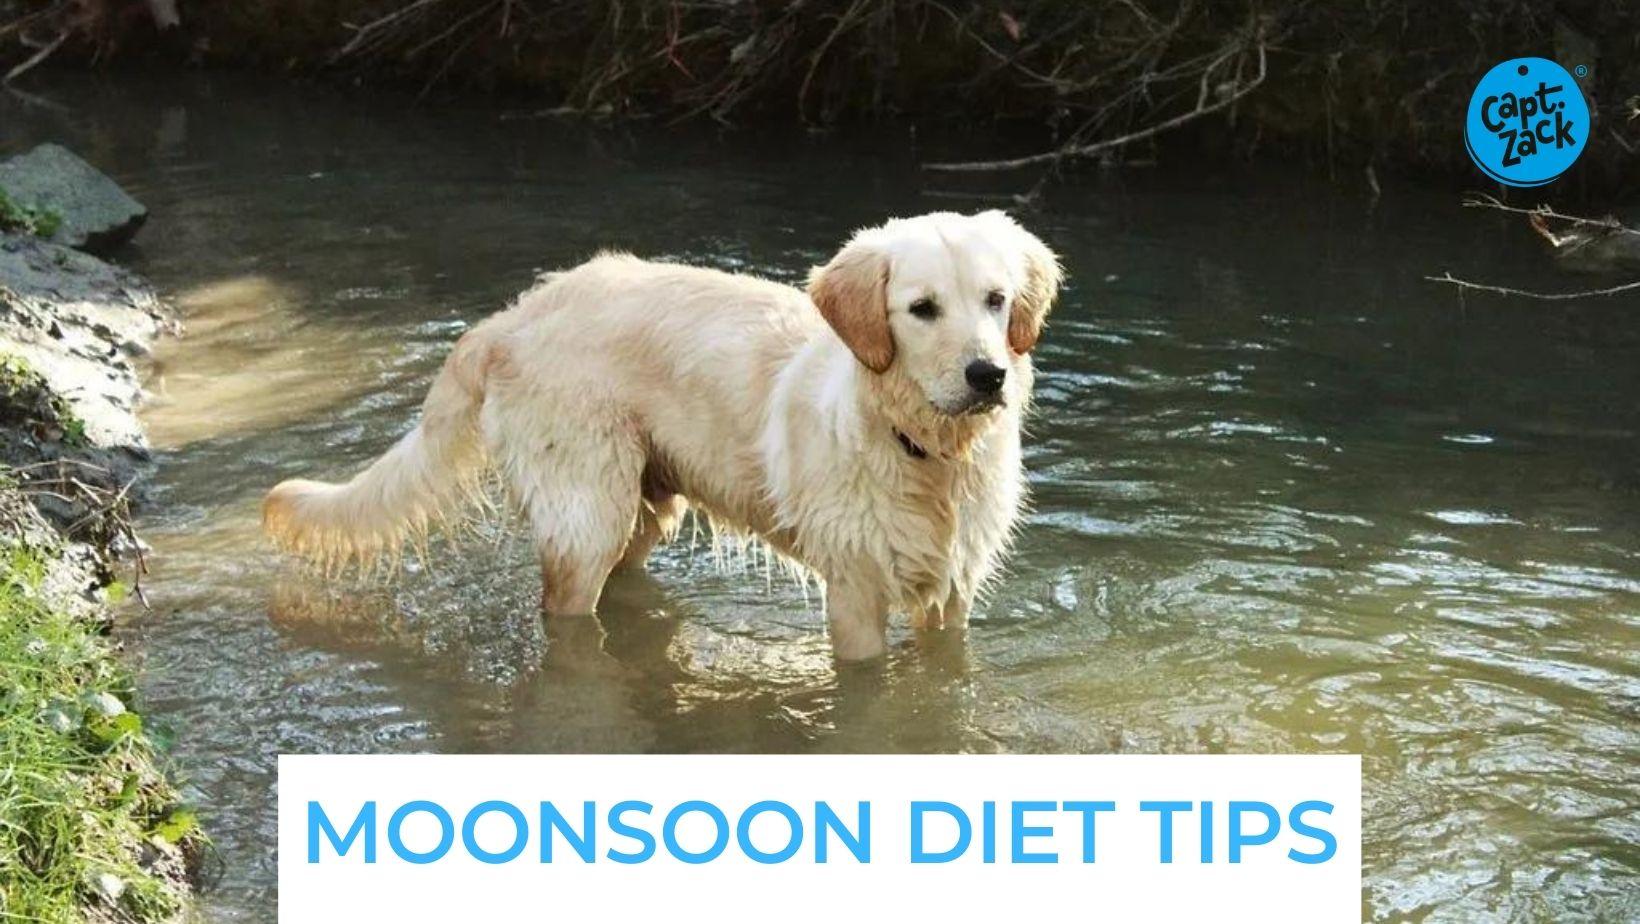 Monsoon Diet Tips - Captain Zack